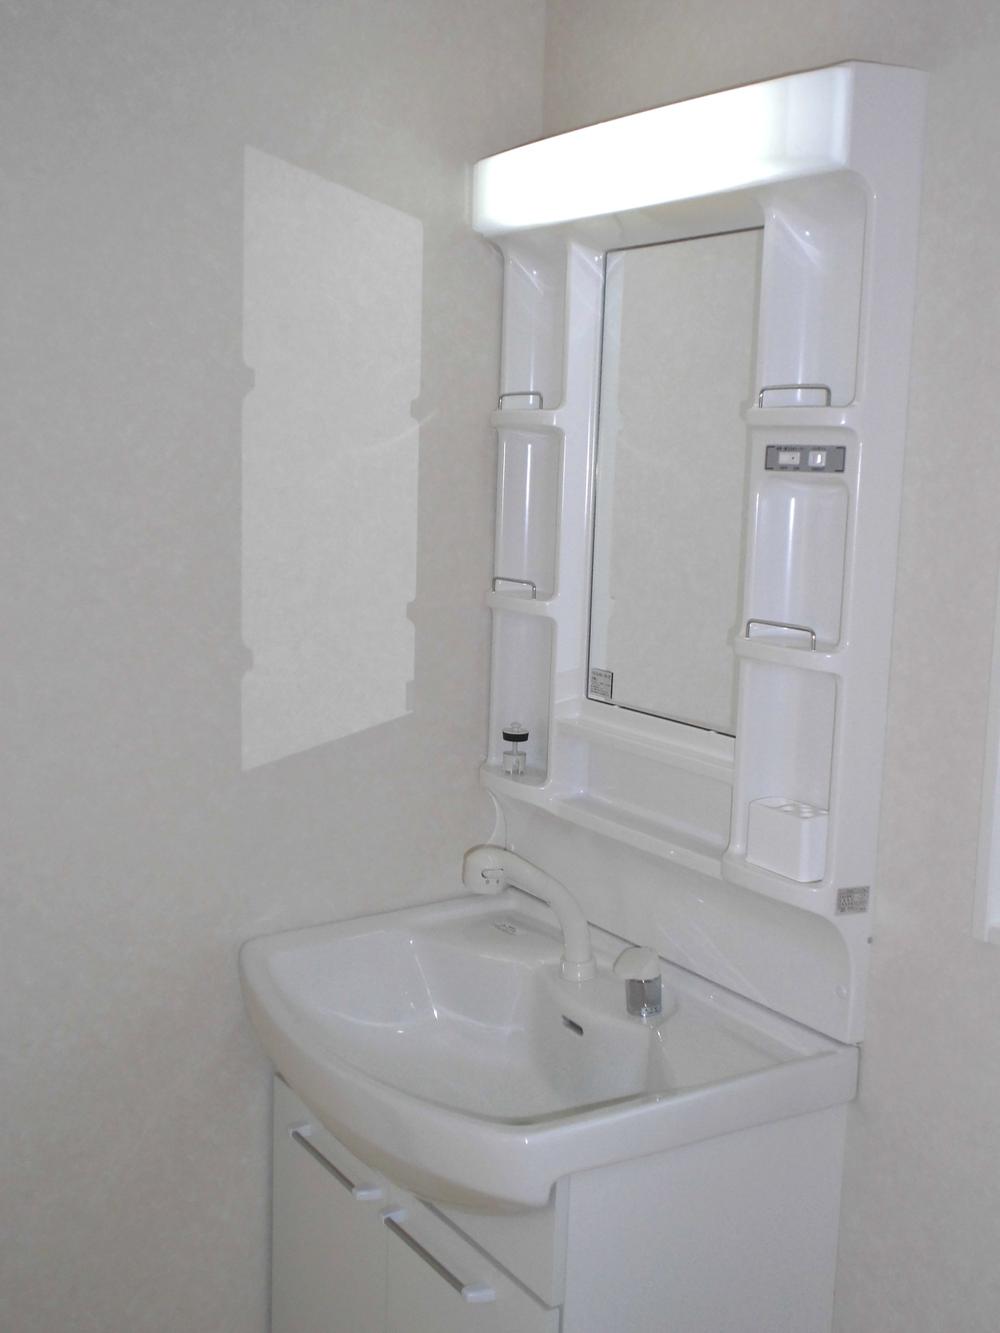 Wash basin, toilet. 1 Building (November 2013) Shooting